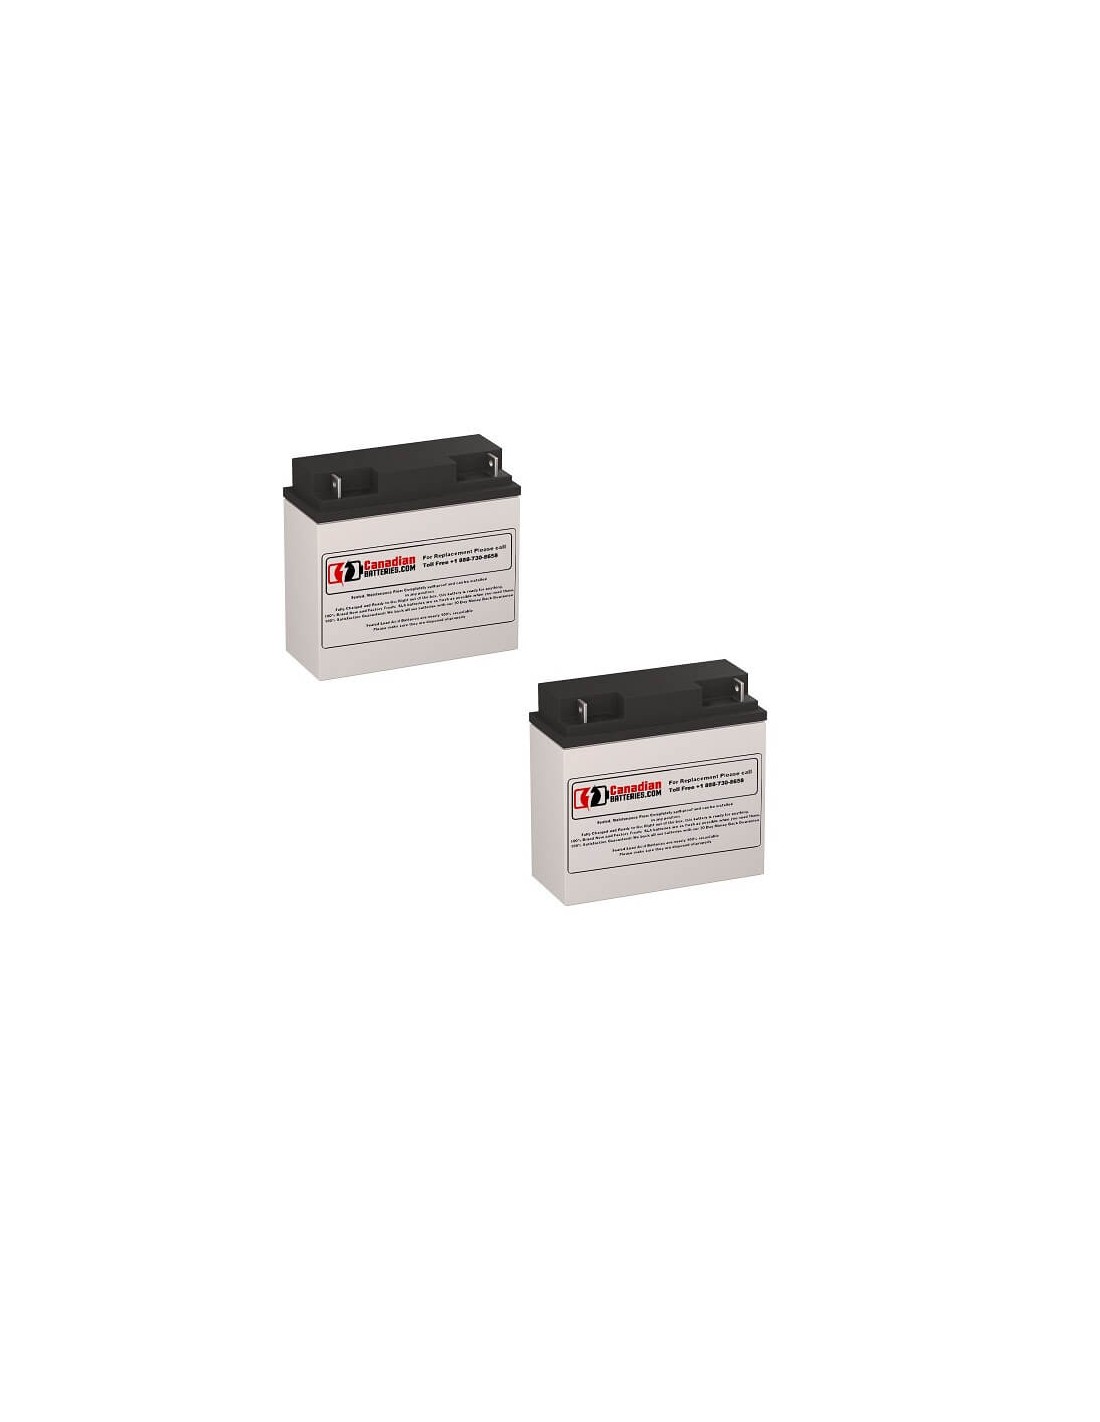 Batteries for Deltec Pra 1000 UPS, 2 x 12V, 18Ah - 216Wh